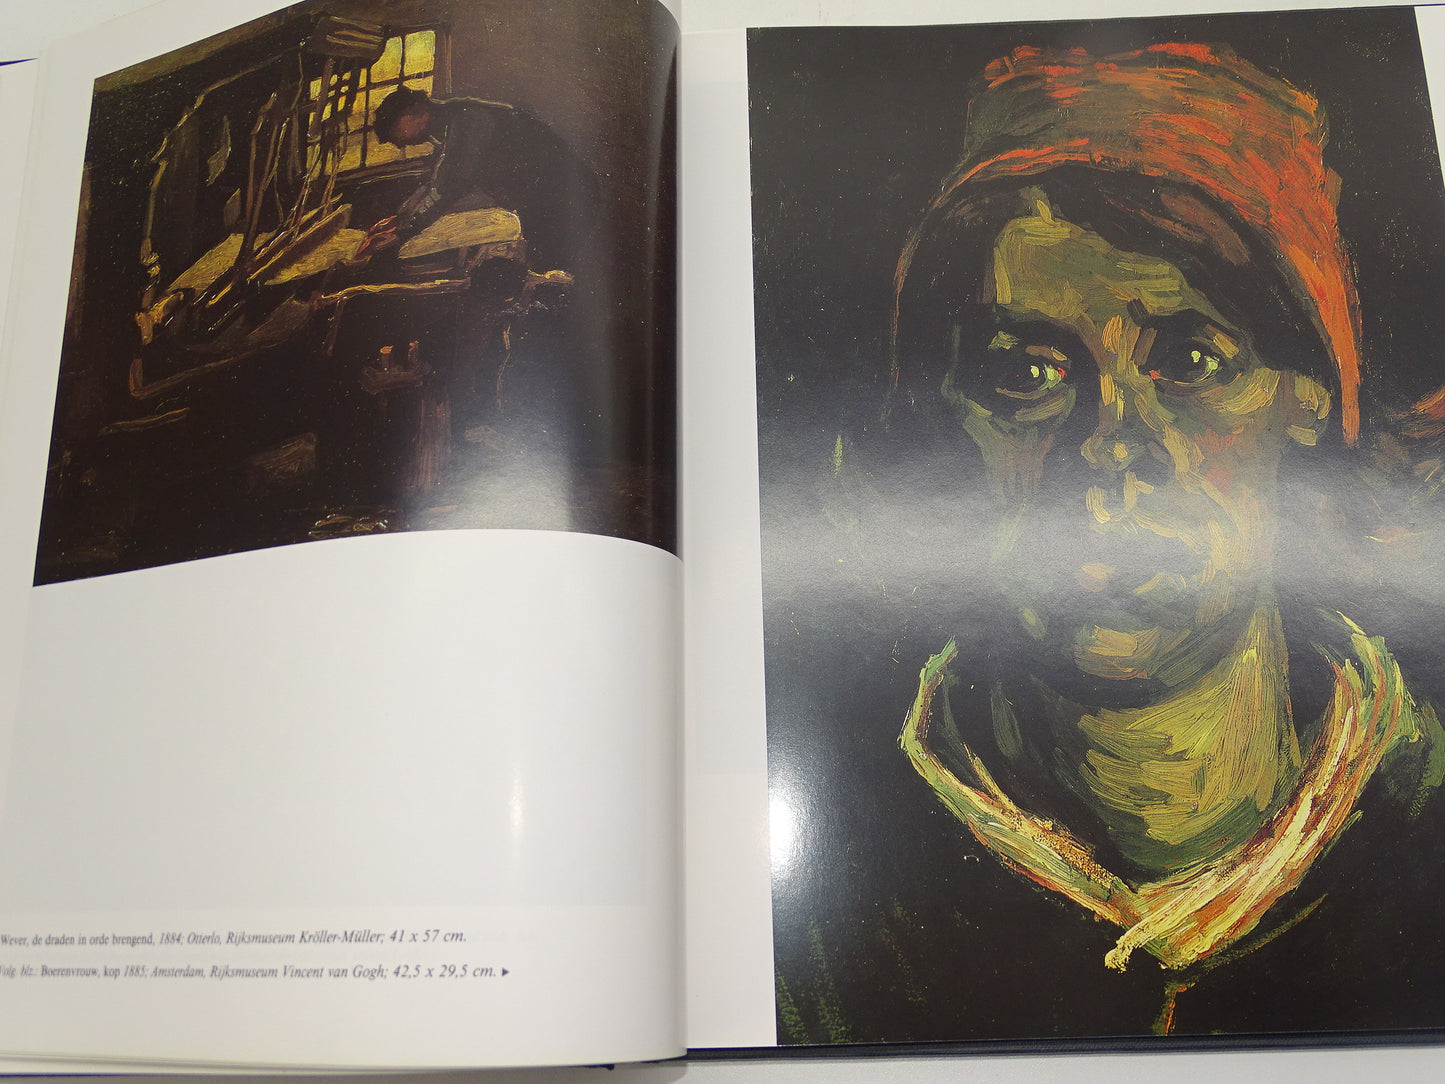 Boek: Galerij van Grote Meester, Van Gogh, 1989